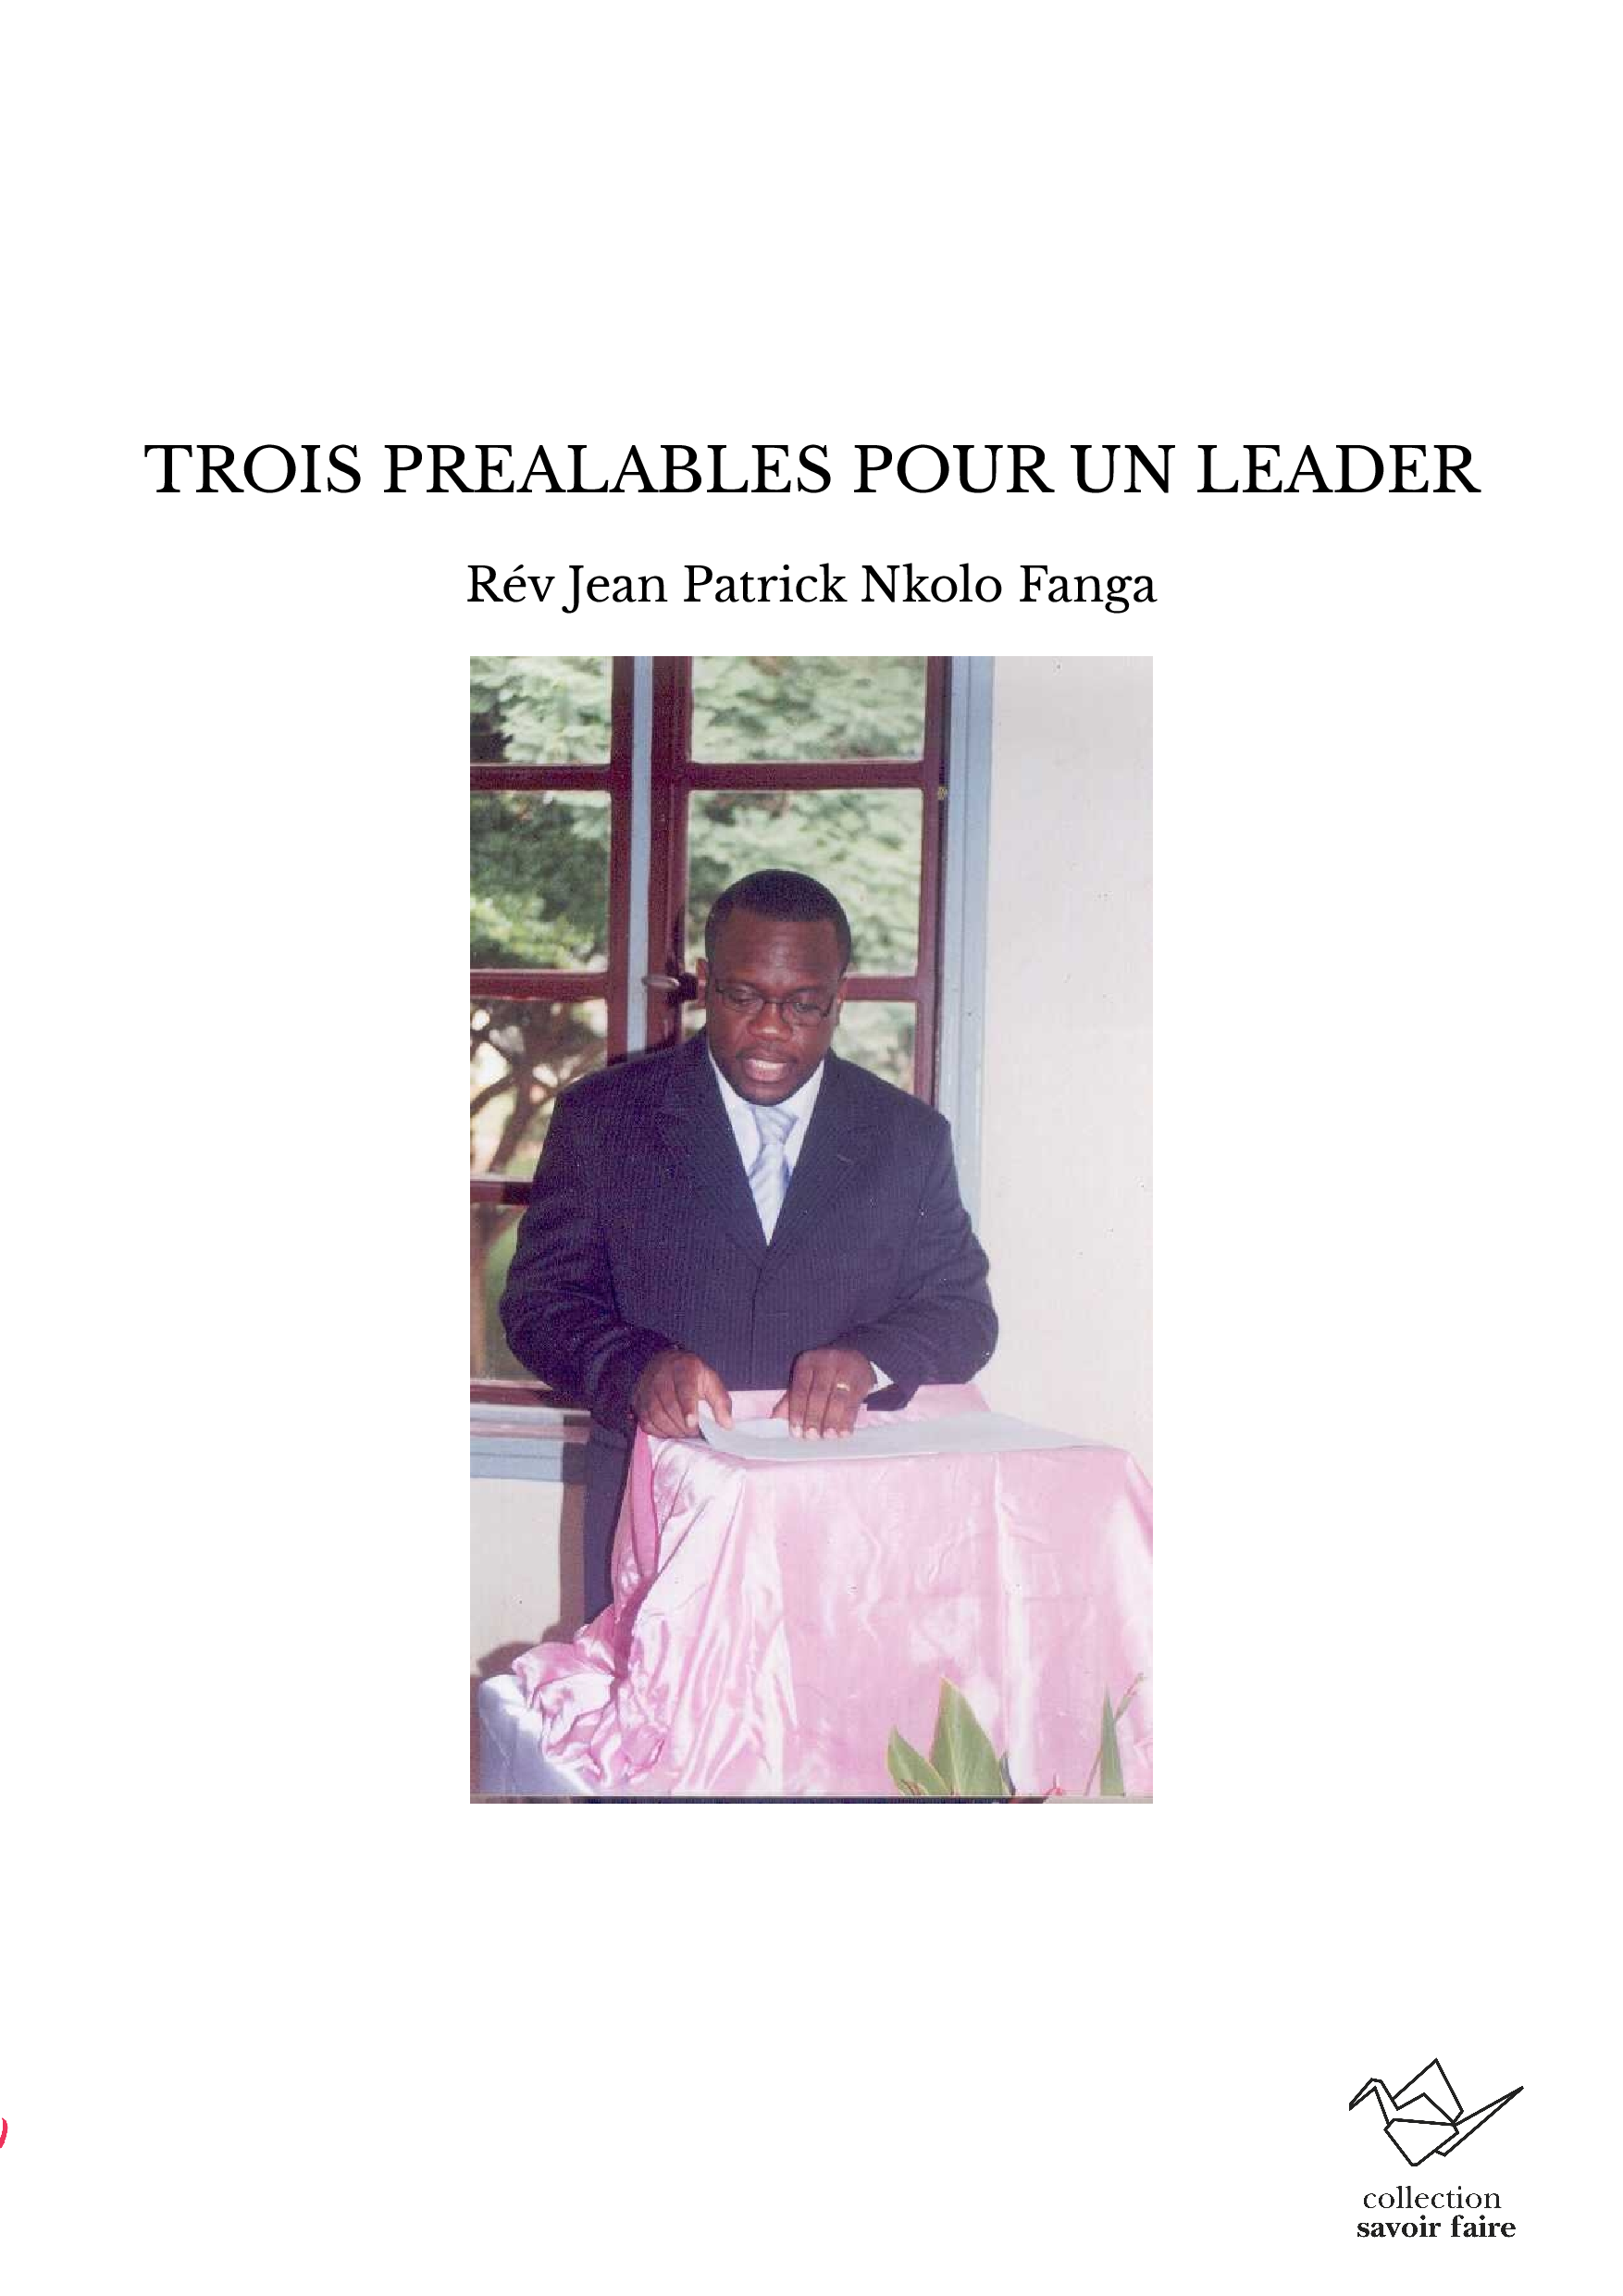 TROIS PREALABLES POUR UN LEADER